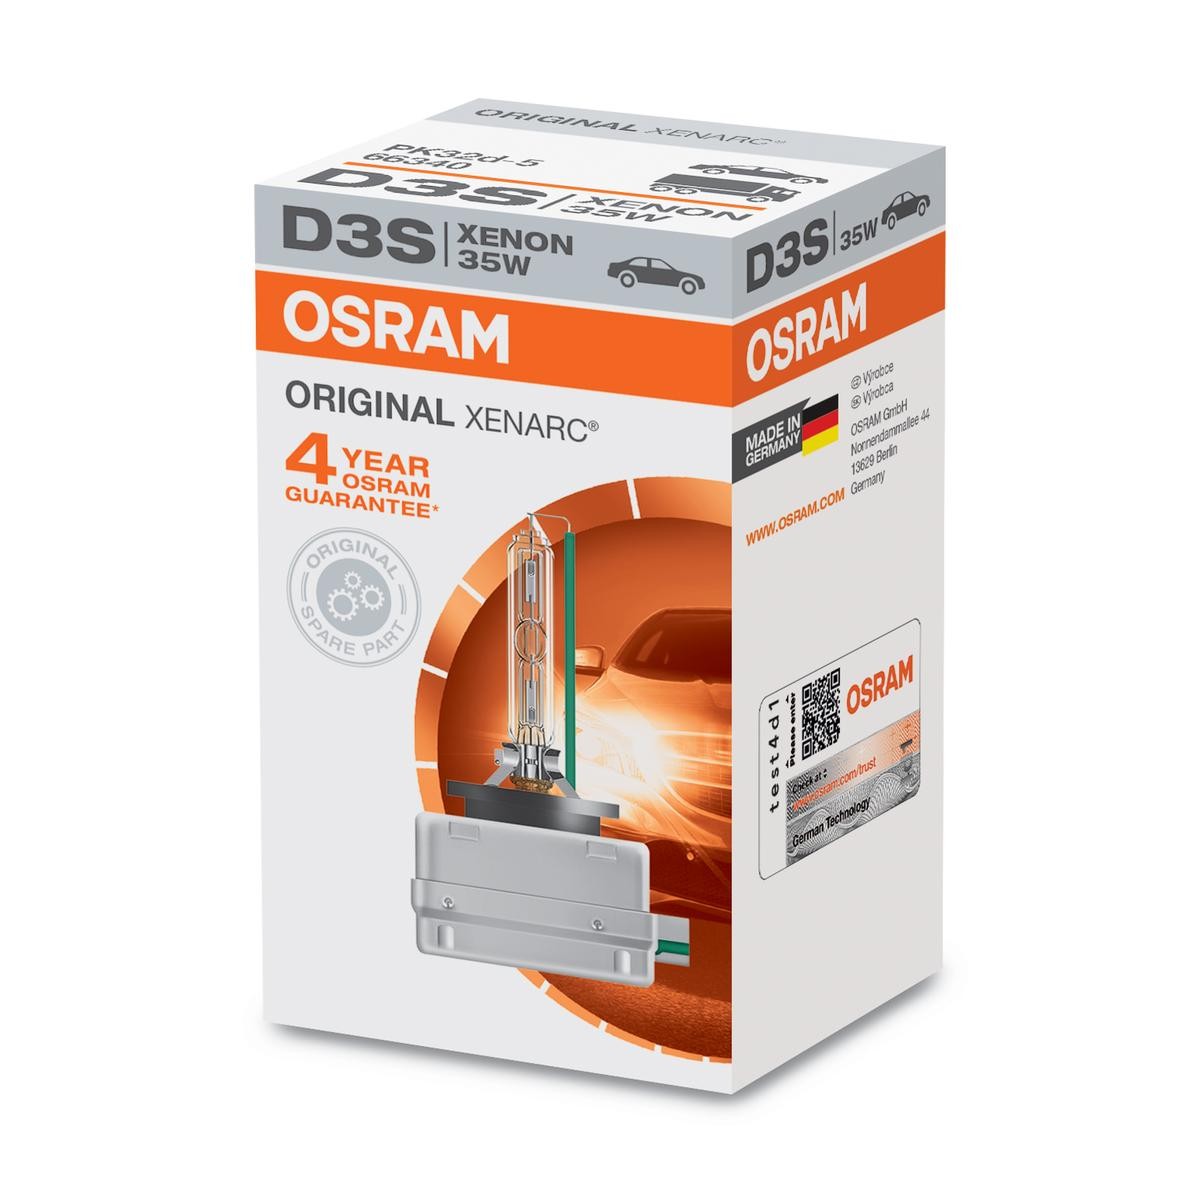 OSRAM XENARC ORIGINAL 66340 Λυχνία προβολέα ομίχλης D3S 42V 35W4100K Ξένον